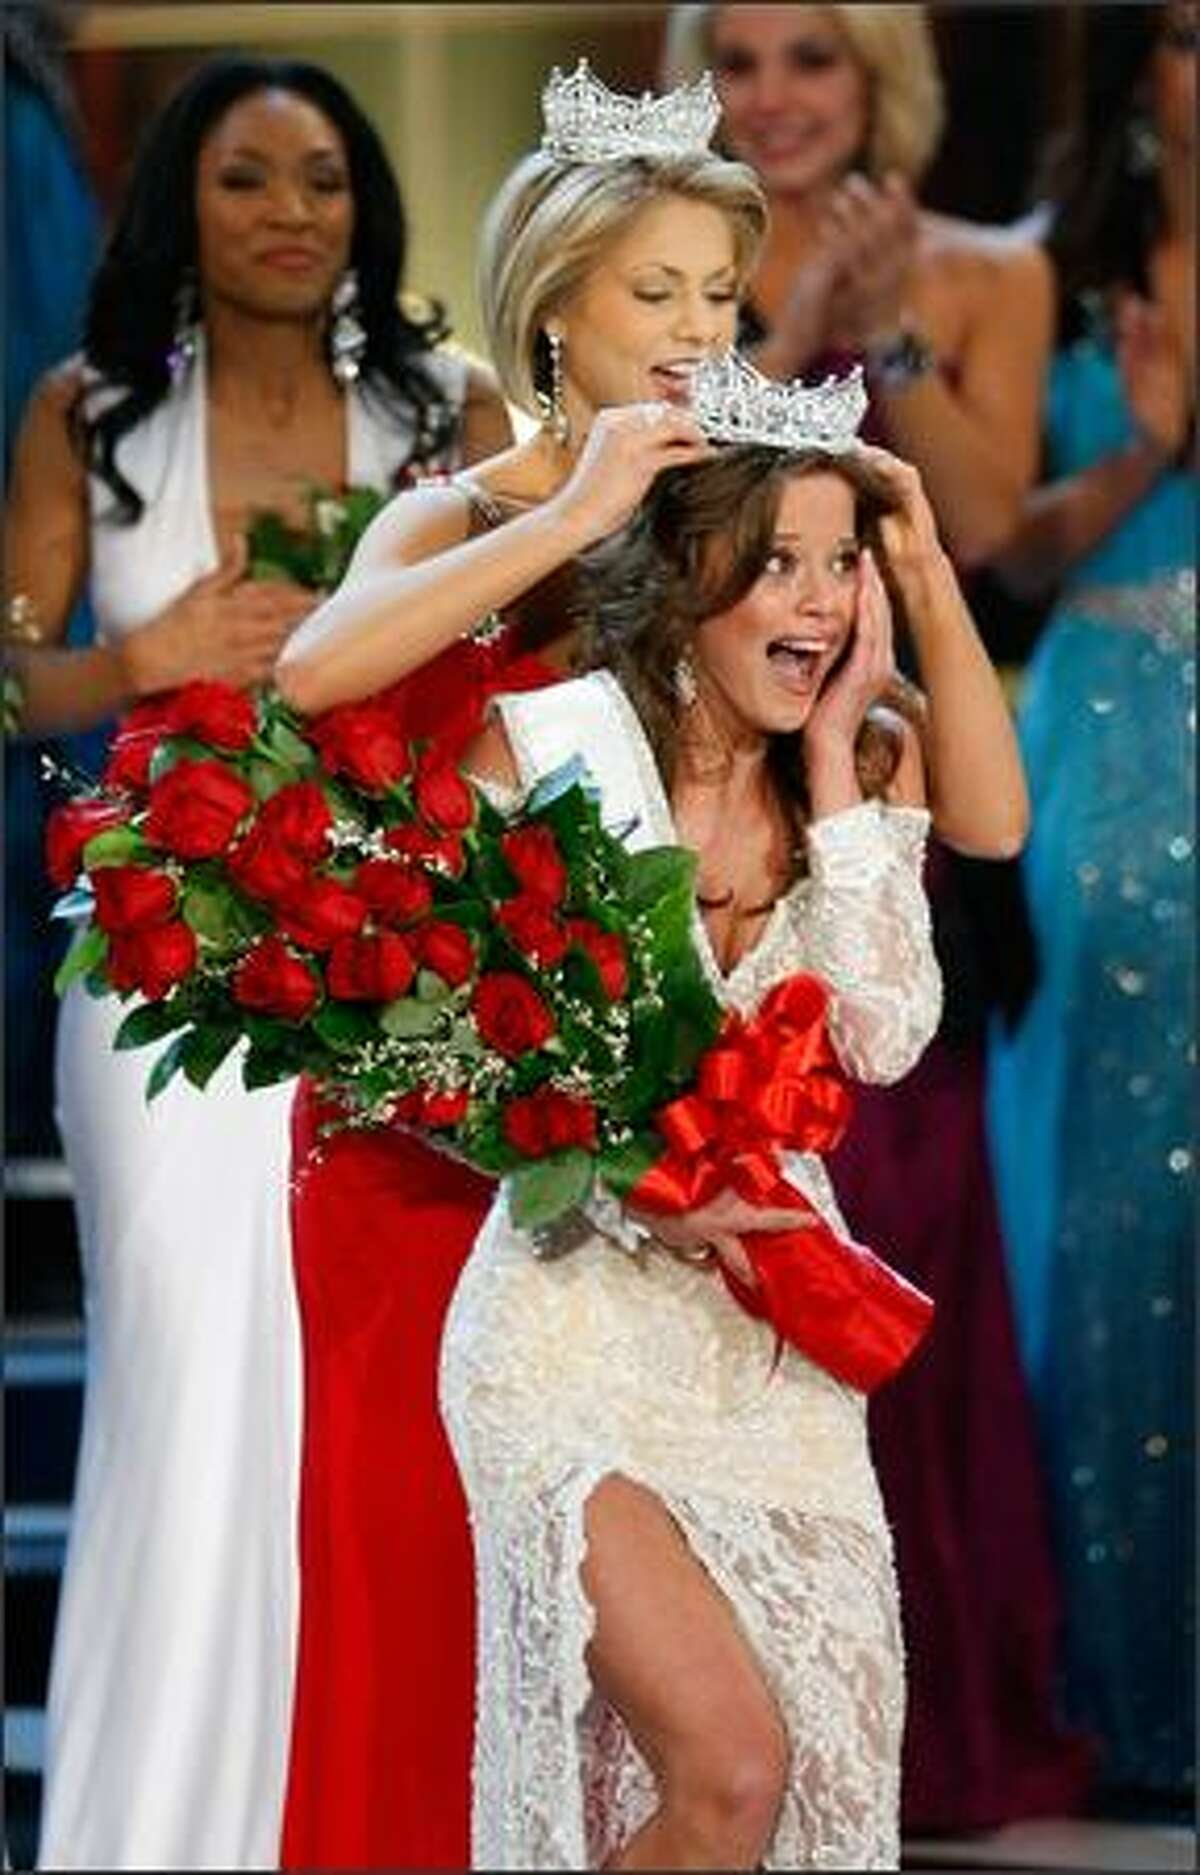 Miss America 2008 Kirsten Haglund crowns Katie Stam, Miss Indiana, the new Miss America.